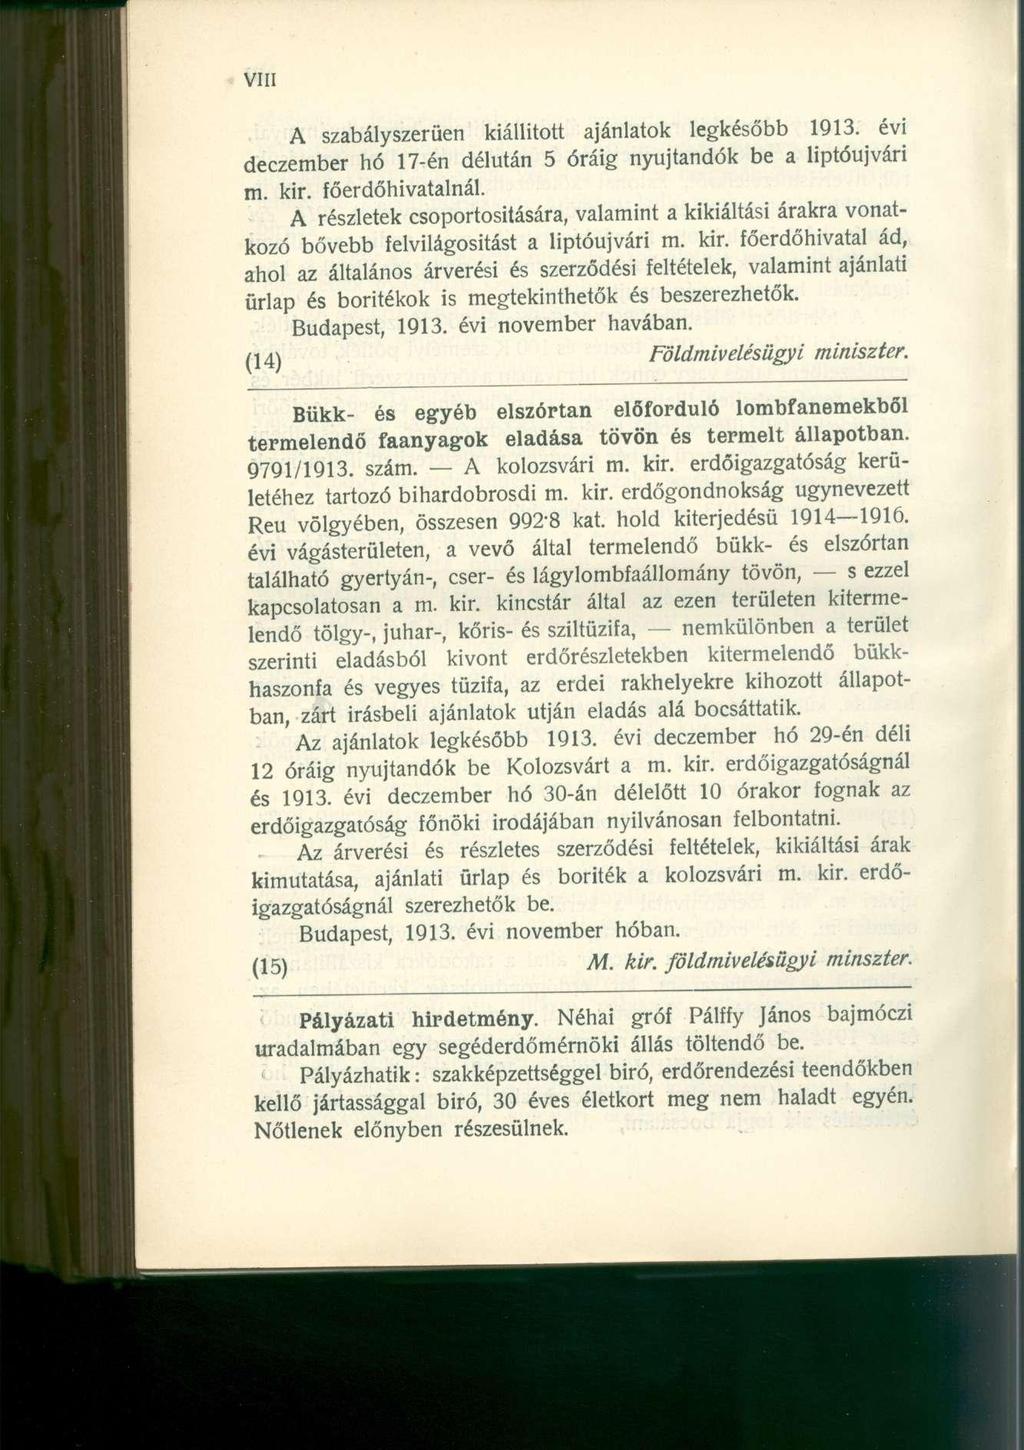 A szabályszerűen kiállított ajánlatok legkésőbb 1913. évi deczember hó 17-én délután 5 óráig nyújtandók be a liptóujvári m. kir. főerdőhivatalnál.